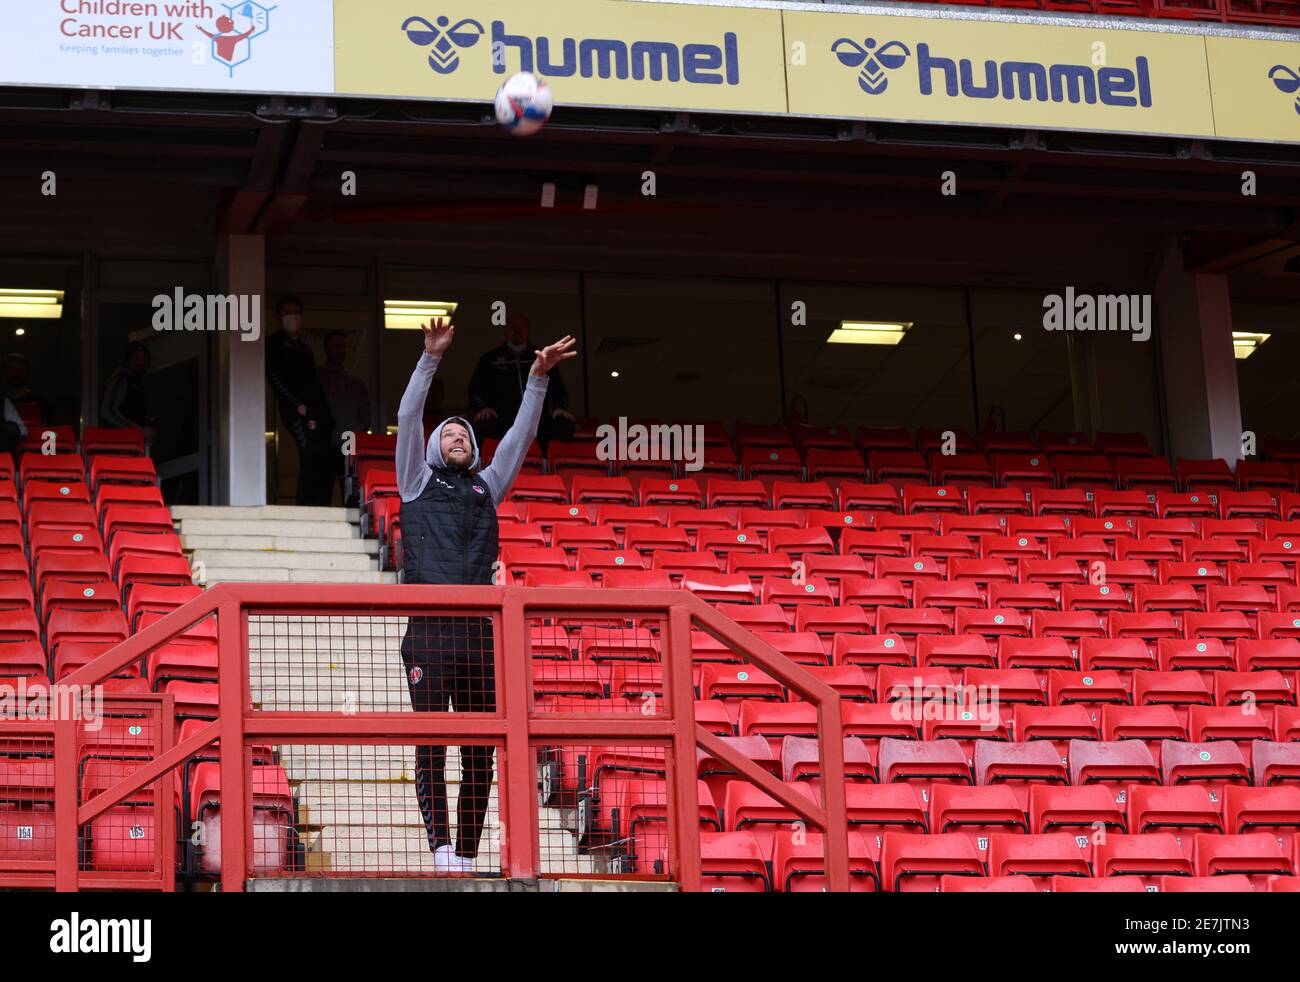 Chris Gunter von Charlton Athletic wirft einen Ball auf das Spielfeld, um die Bedingungen vor dem Sky Bet League One Spiel im Valley Charlton zu überprüfen. Bilddatum: Samstag, 30. Januar 2021. Stockfoto